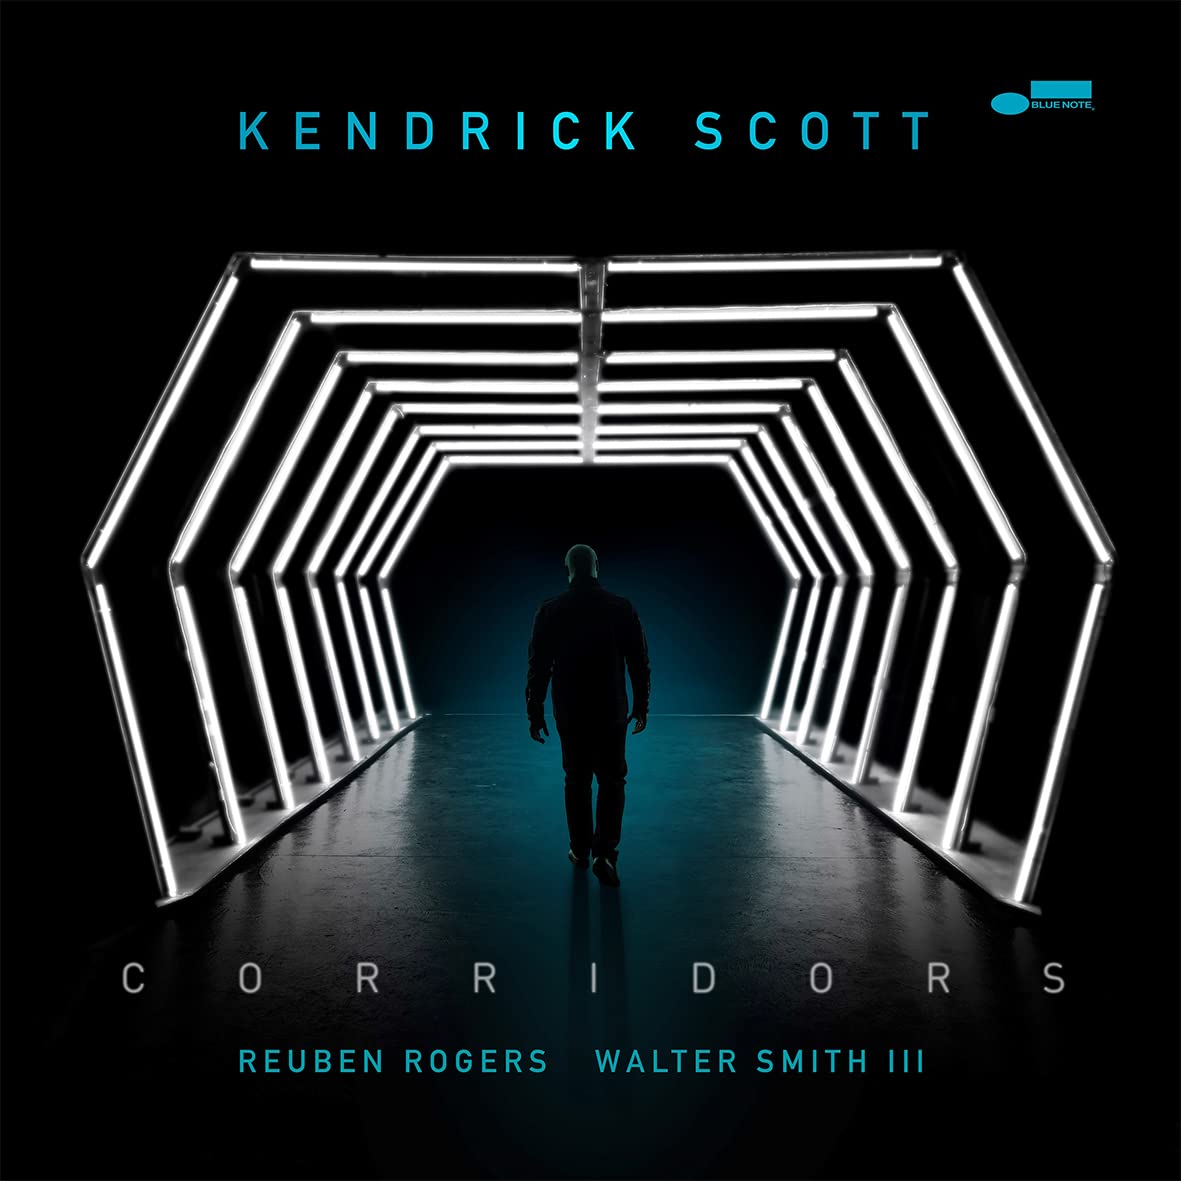 KENDRICK SCOTT - Kendrick Scott / Reuben Rogers / Walter Smith III : Corridors cover 